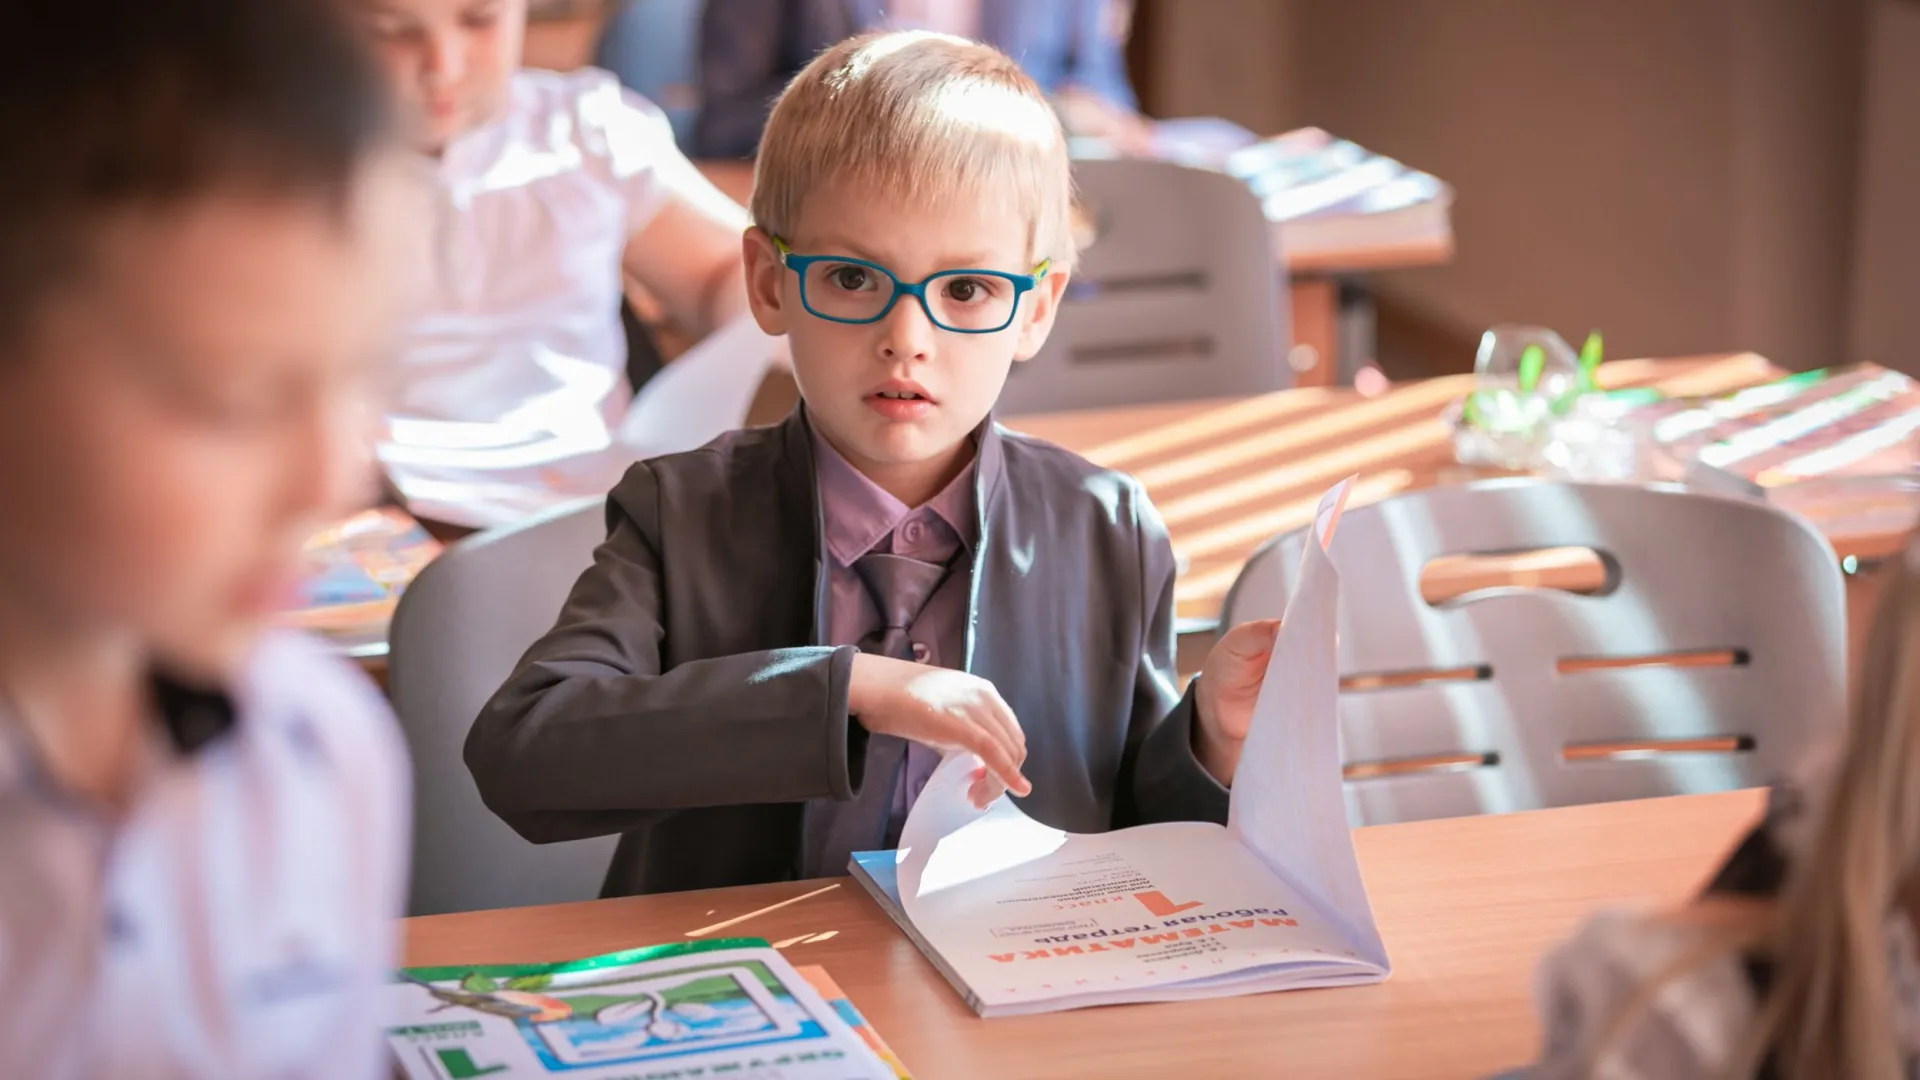 Интерес к математике детям можно привить в раннем возрасте. Фото: Yurich20 / Shutterstock / Fotodom